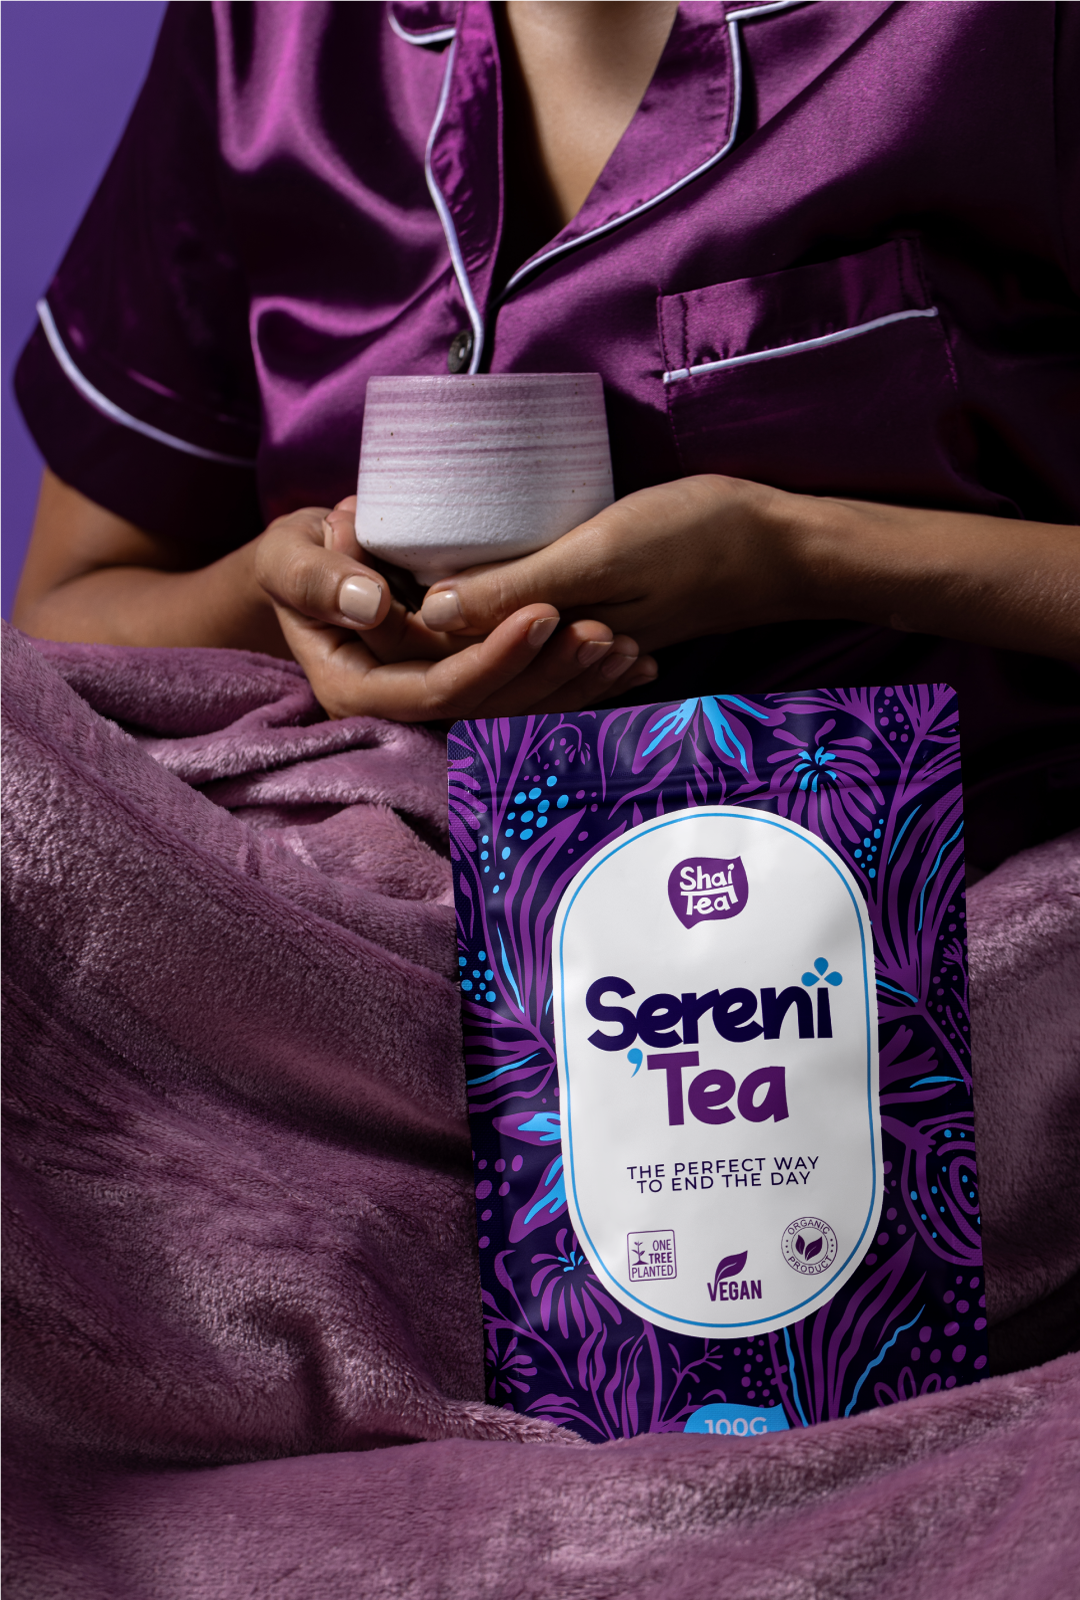 Serini'tea